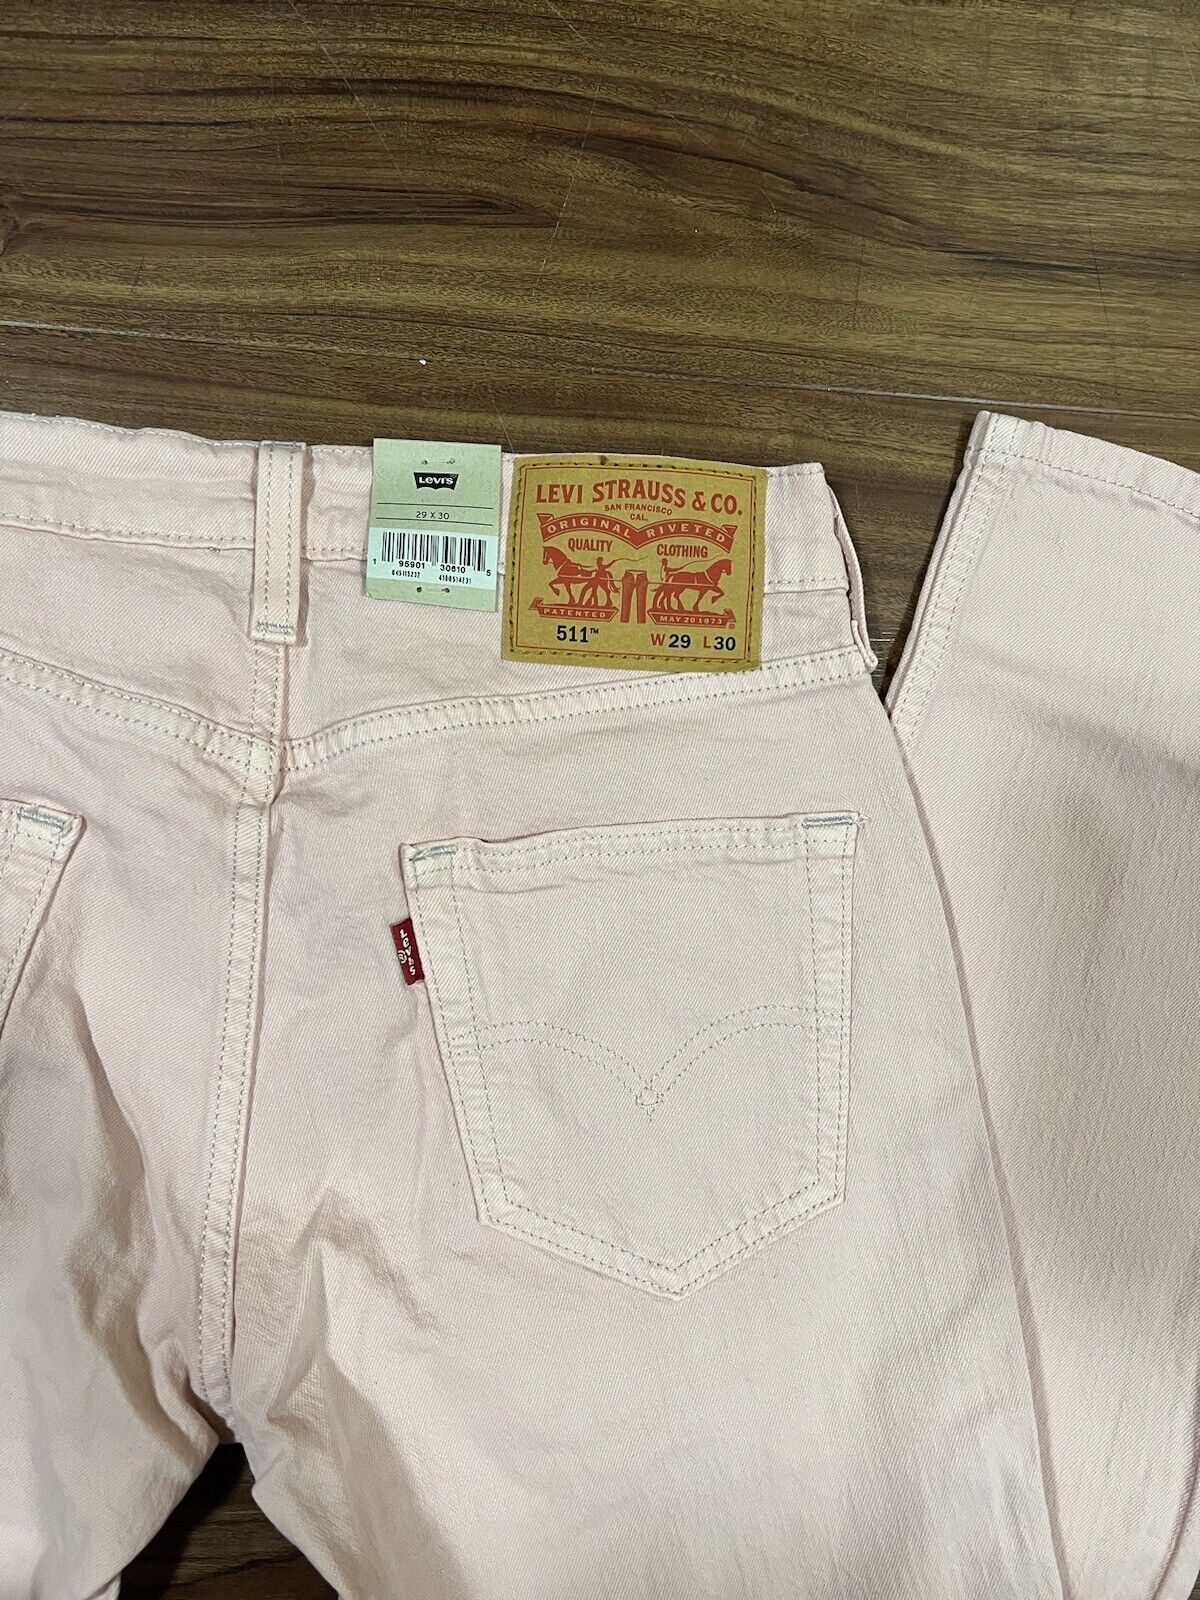 Levis 511 Slim Eco Ease Jeans, Mens 29x30 -Light Pink 195901306105 | eBay